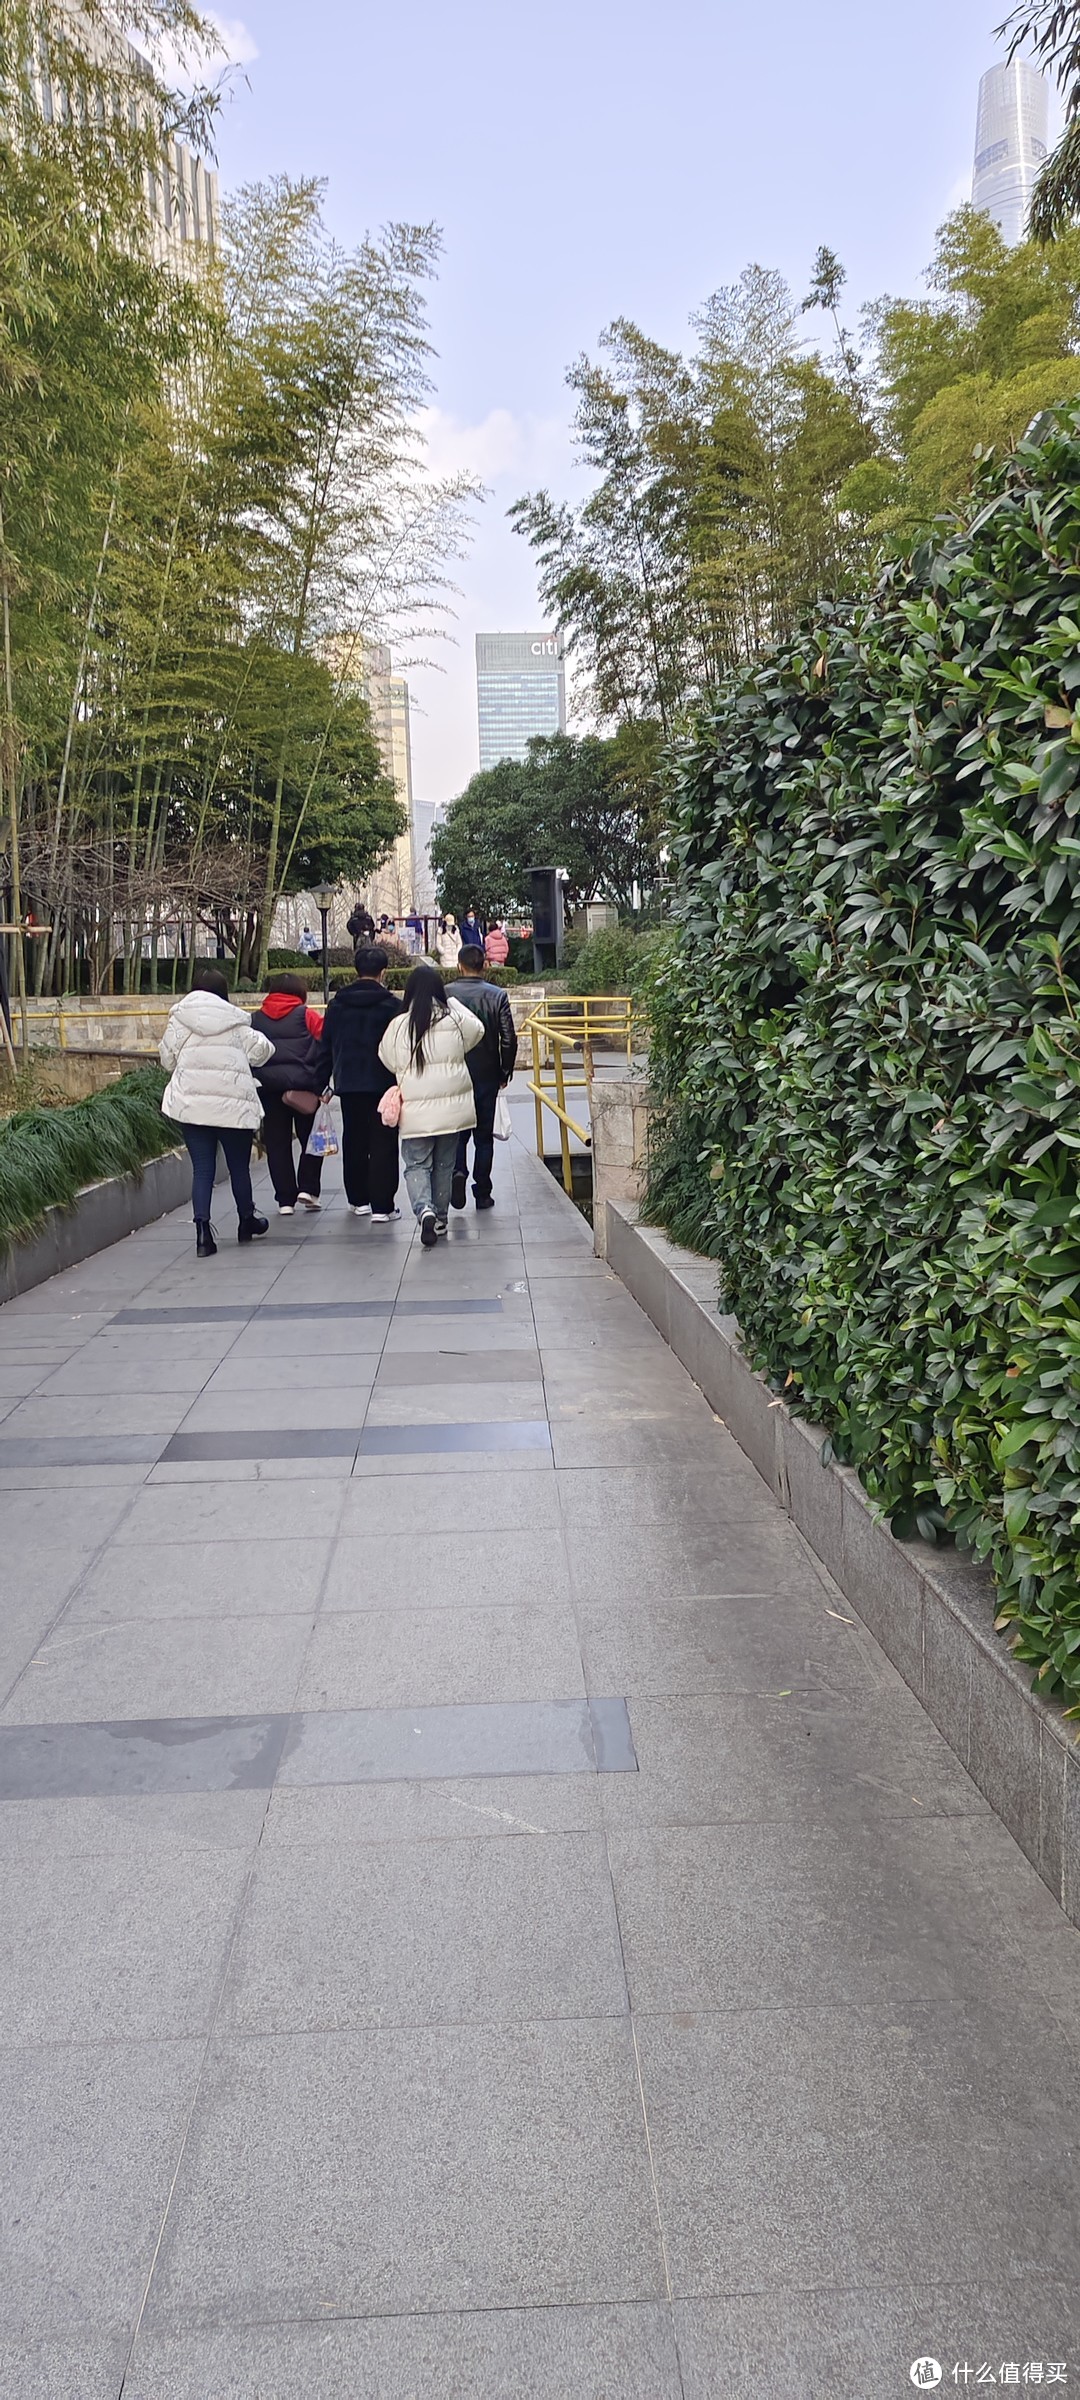 上海黄浦区/古城公园游记/竹林环绕，林间小道/探索历史的轨迹，诉说城墙的故事/蜿蜒曲折，错落有致